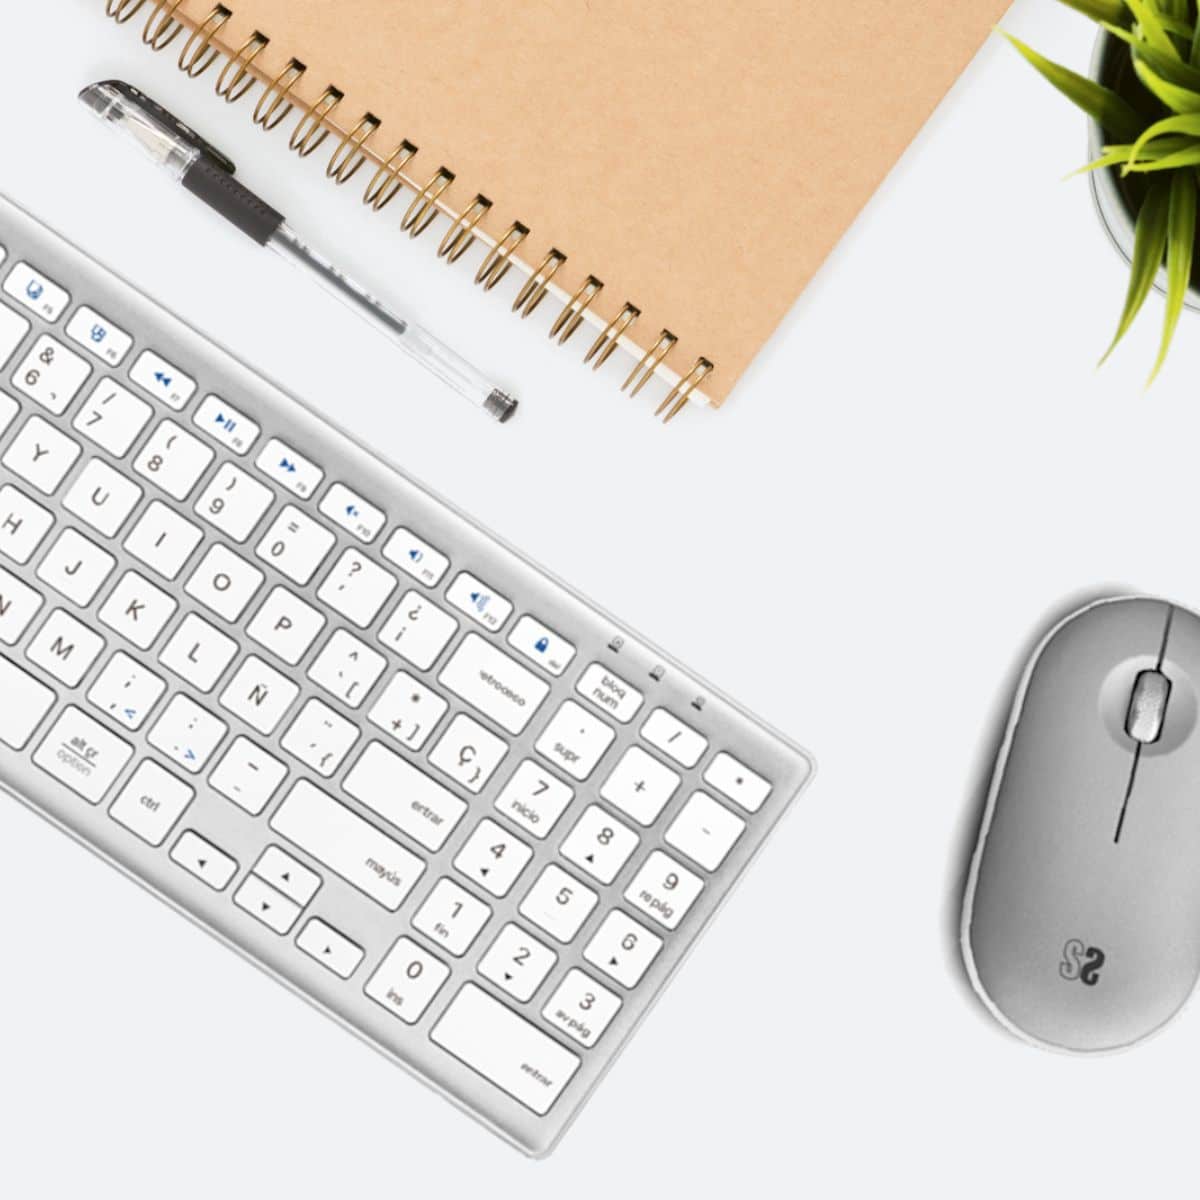 Combo bluetooth teclado y ratón inalámbricos blanco plata Pure Extended de SUBBLIM en escritorio de trabajo. Ideal para trabajar y estudiar, diseño y funcionalidad.